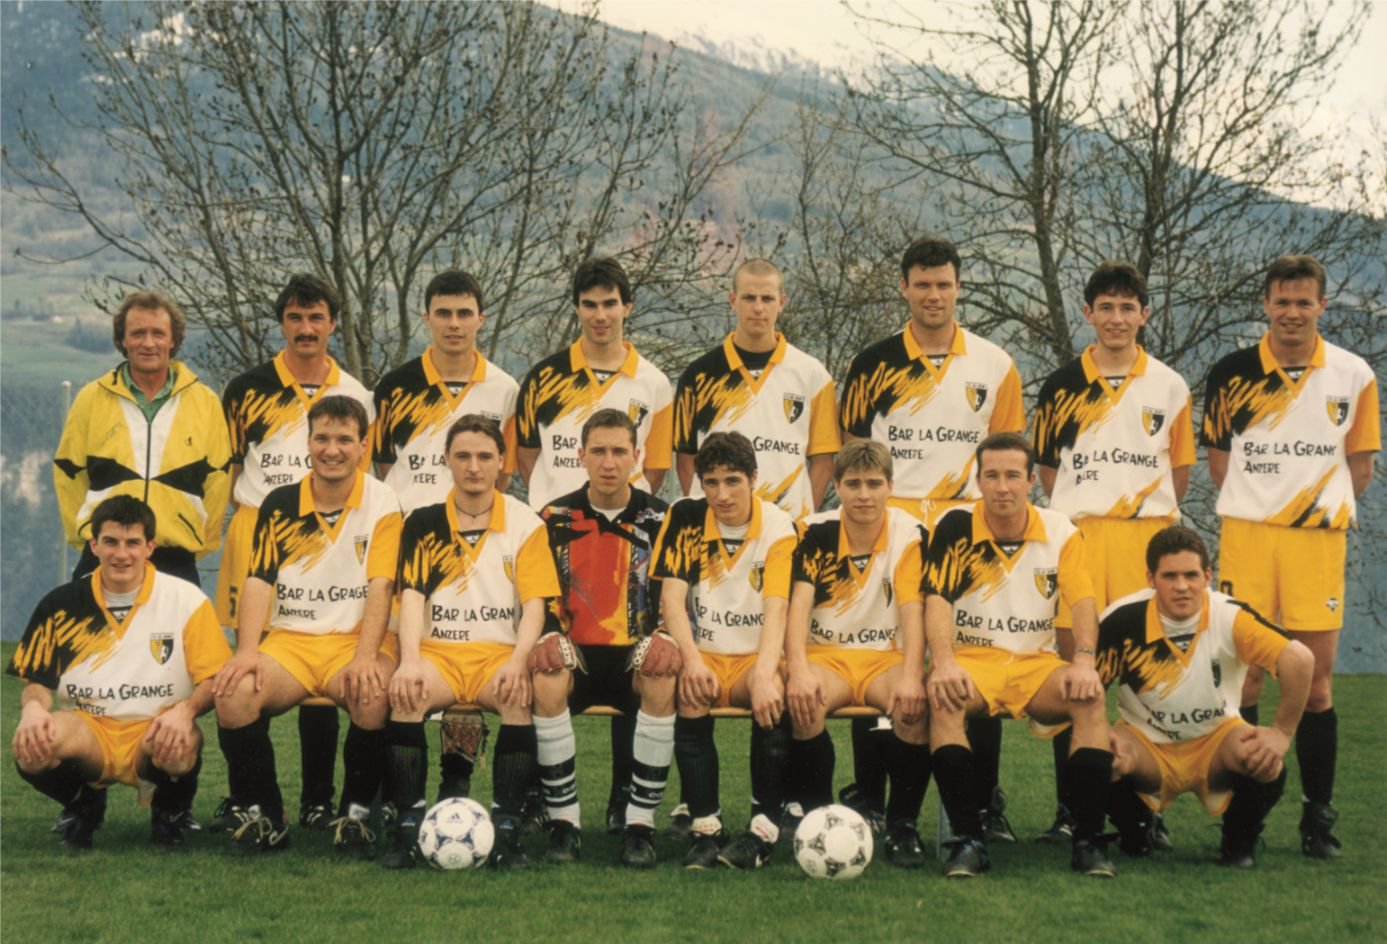 Les pionniers de la première équipe d’actifs de l’US Ayent-Arbaz lors de la saison 1997-1998.